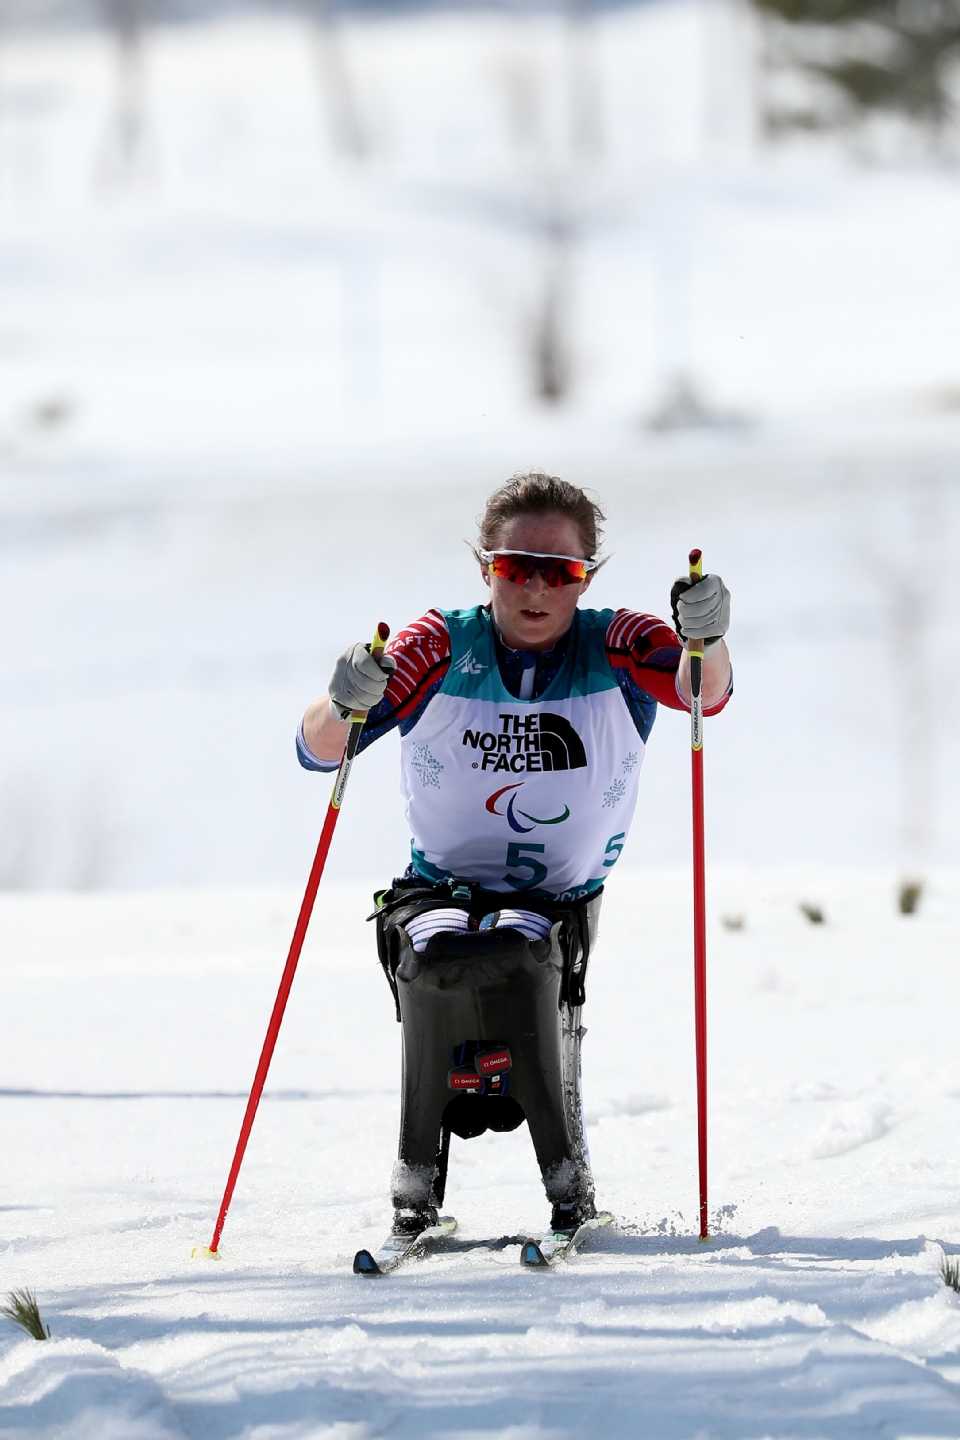 2018 평창동계패럴림픽 바이애슬론 여자 10km 좌식 경기